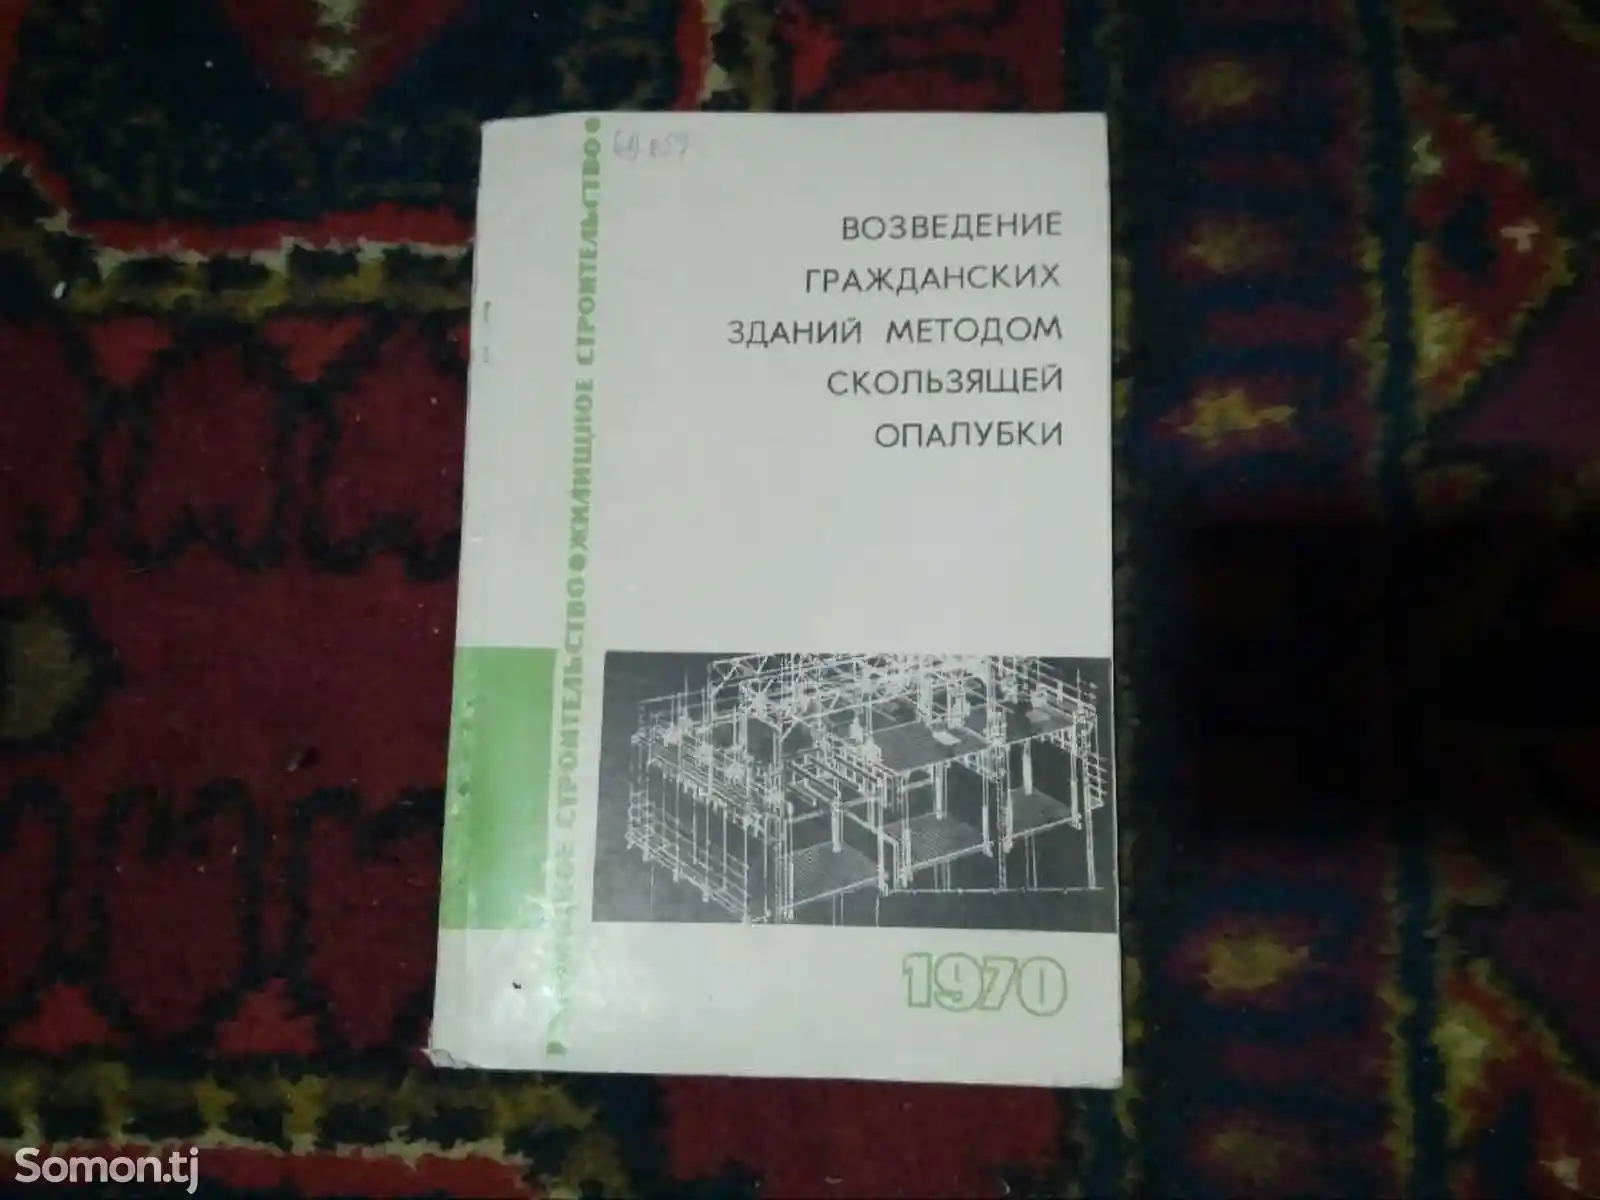 Книга Возведение гражданских зданий методом скользящей опалубки